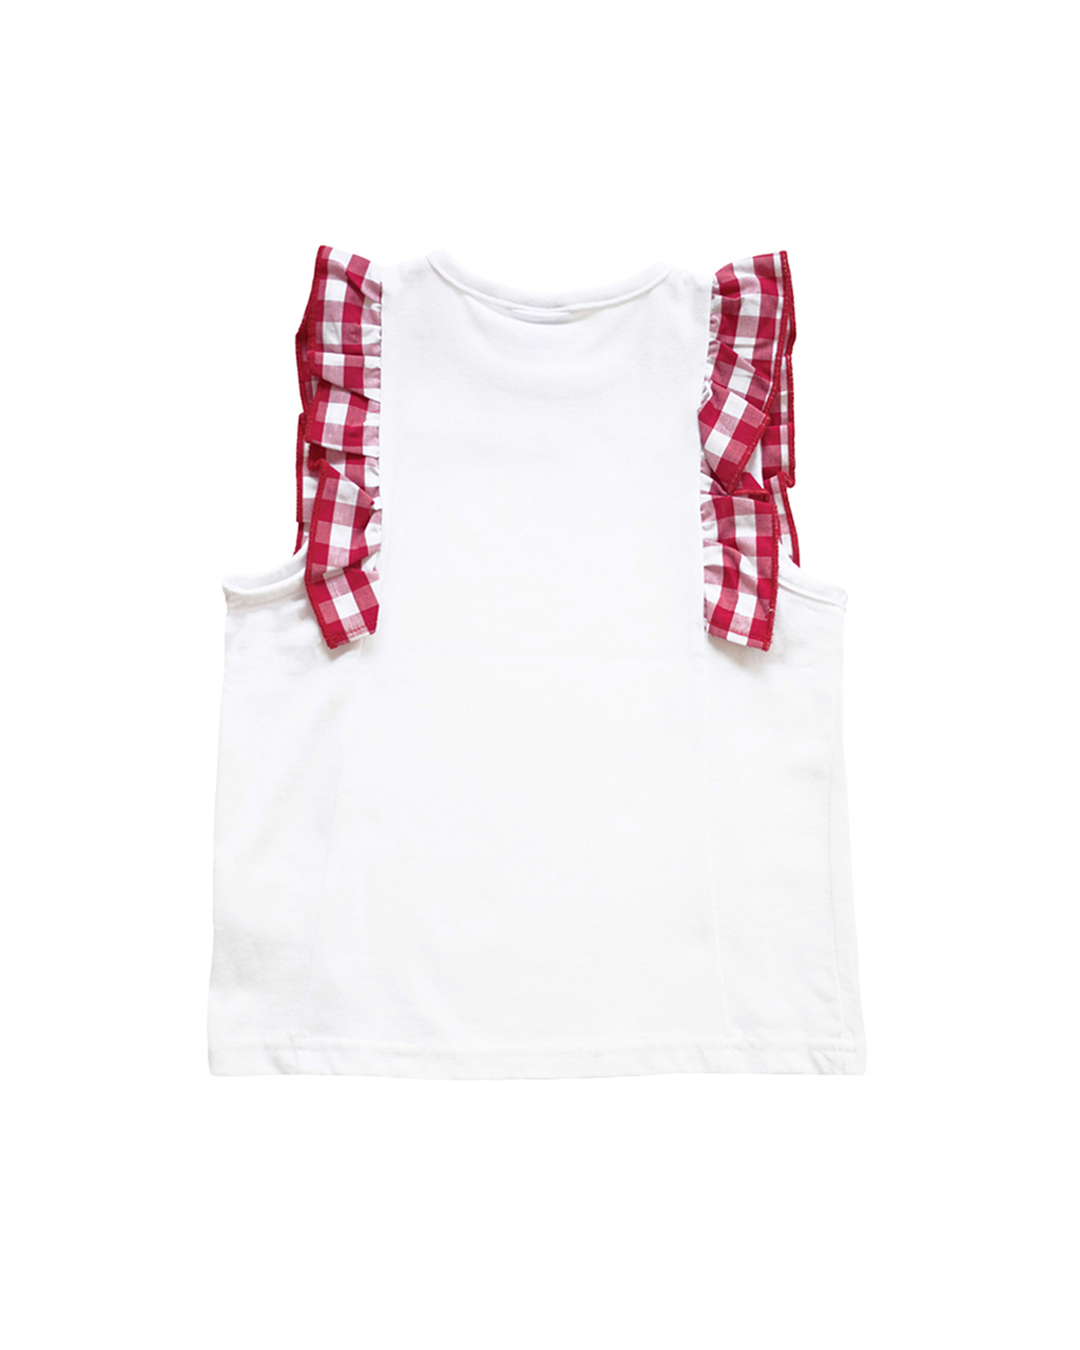 Blusa blanca con mangas en vichy rojo y blanco